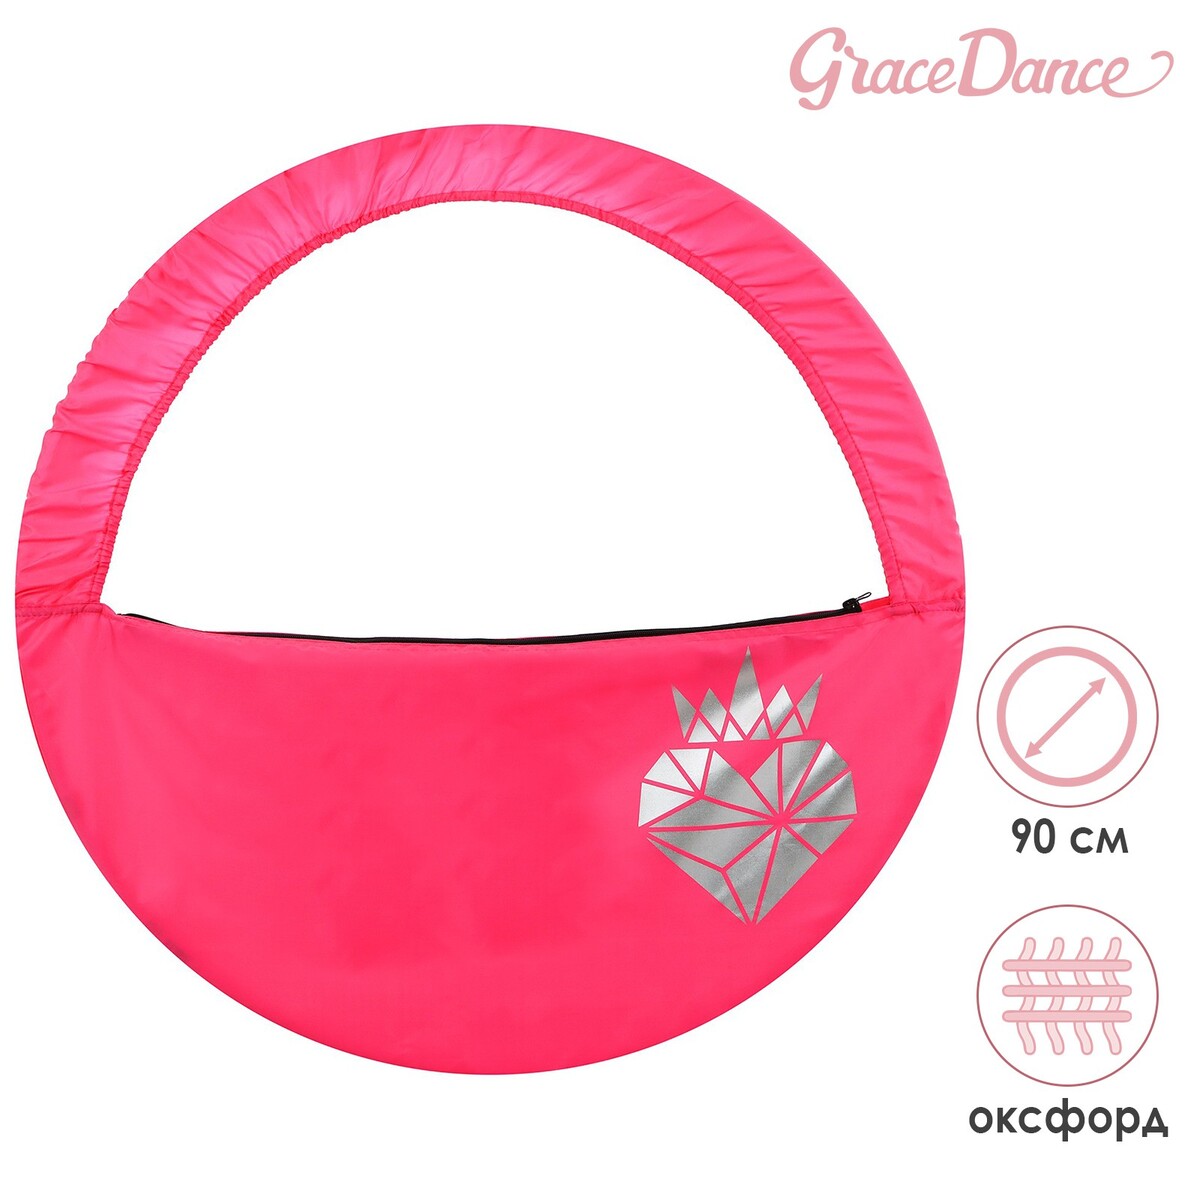 Чехол для обруча grace dance чехол для обруча grace dance d 90 см розовый